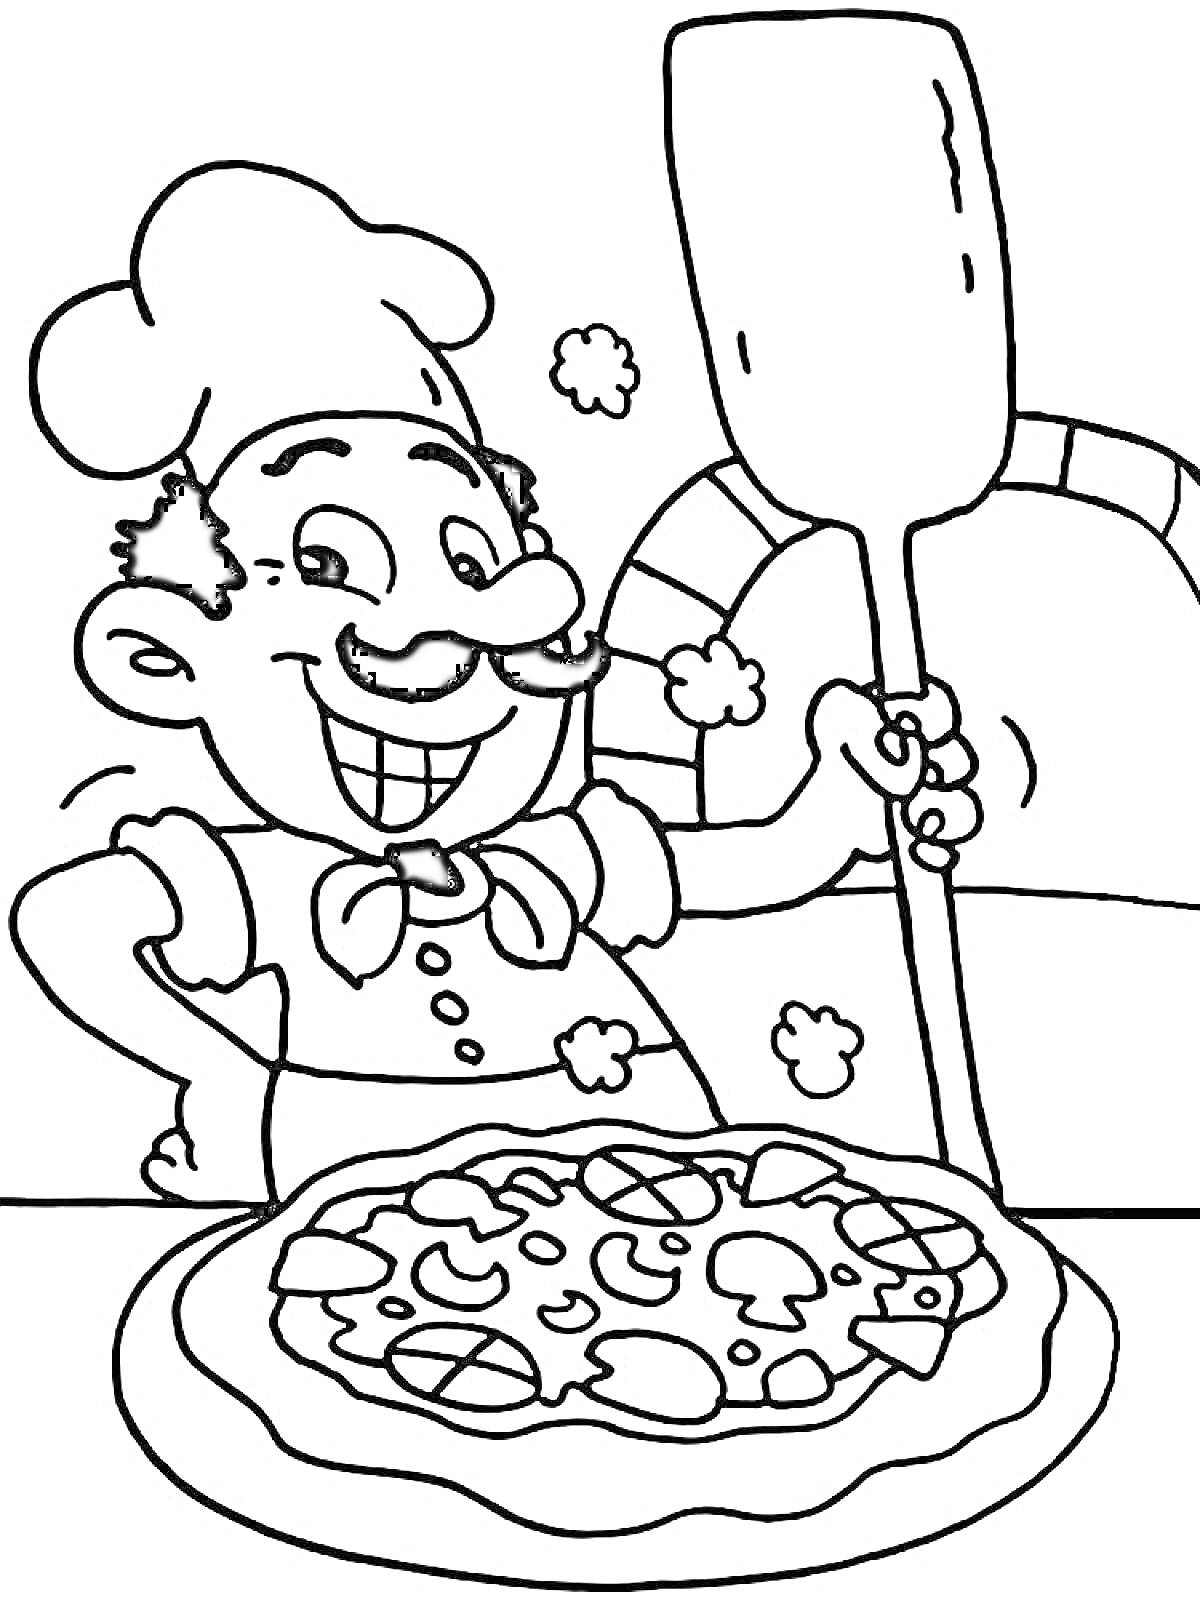 Повар улыбается и держит лопату для пиццы возле печи с готовой пиццей на переднем плане